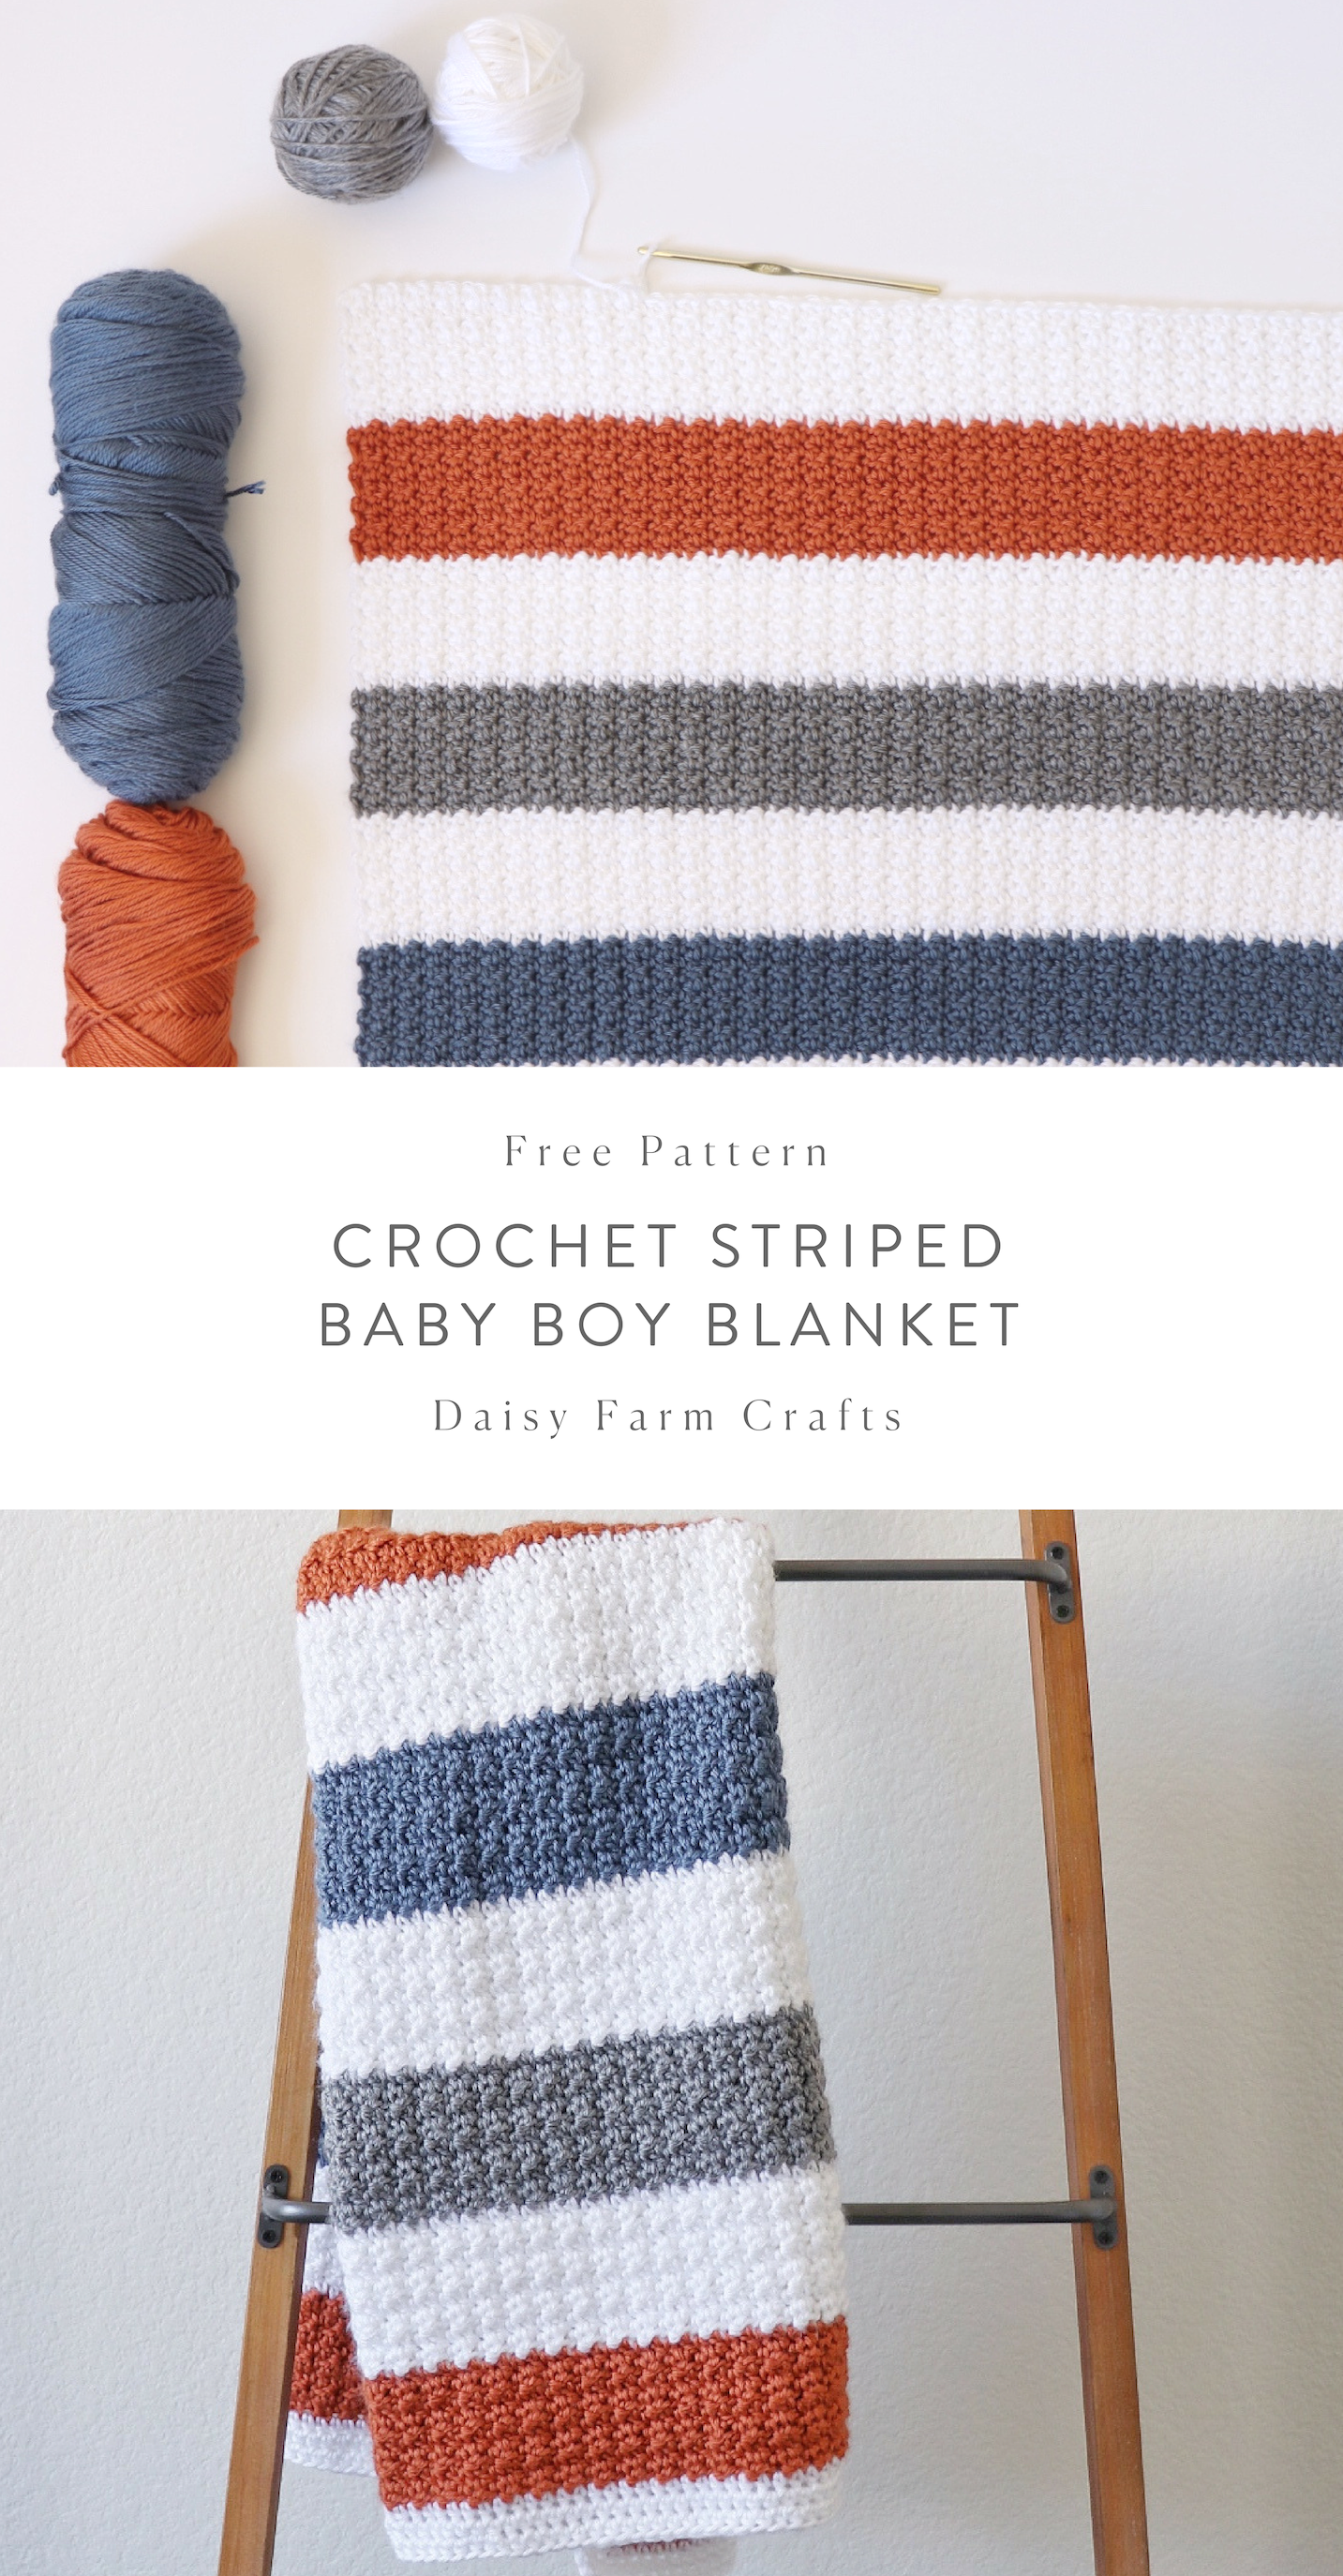 Free-Pattern-Crochet-Striped-Baby-Boy-Blanket.png